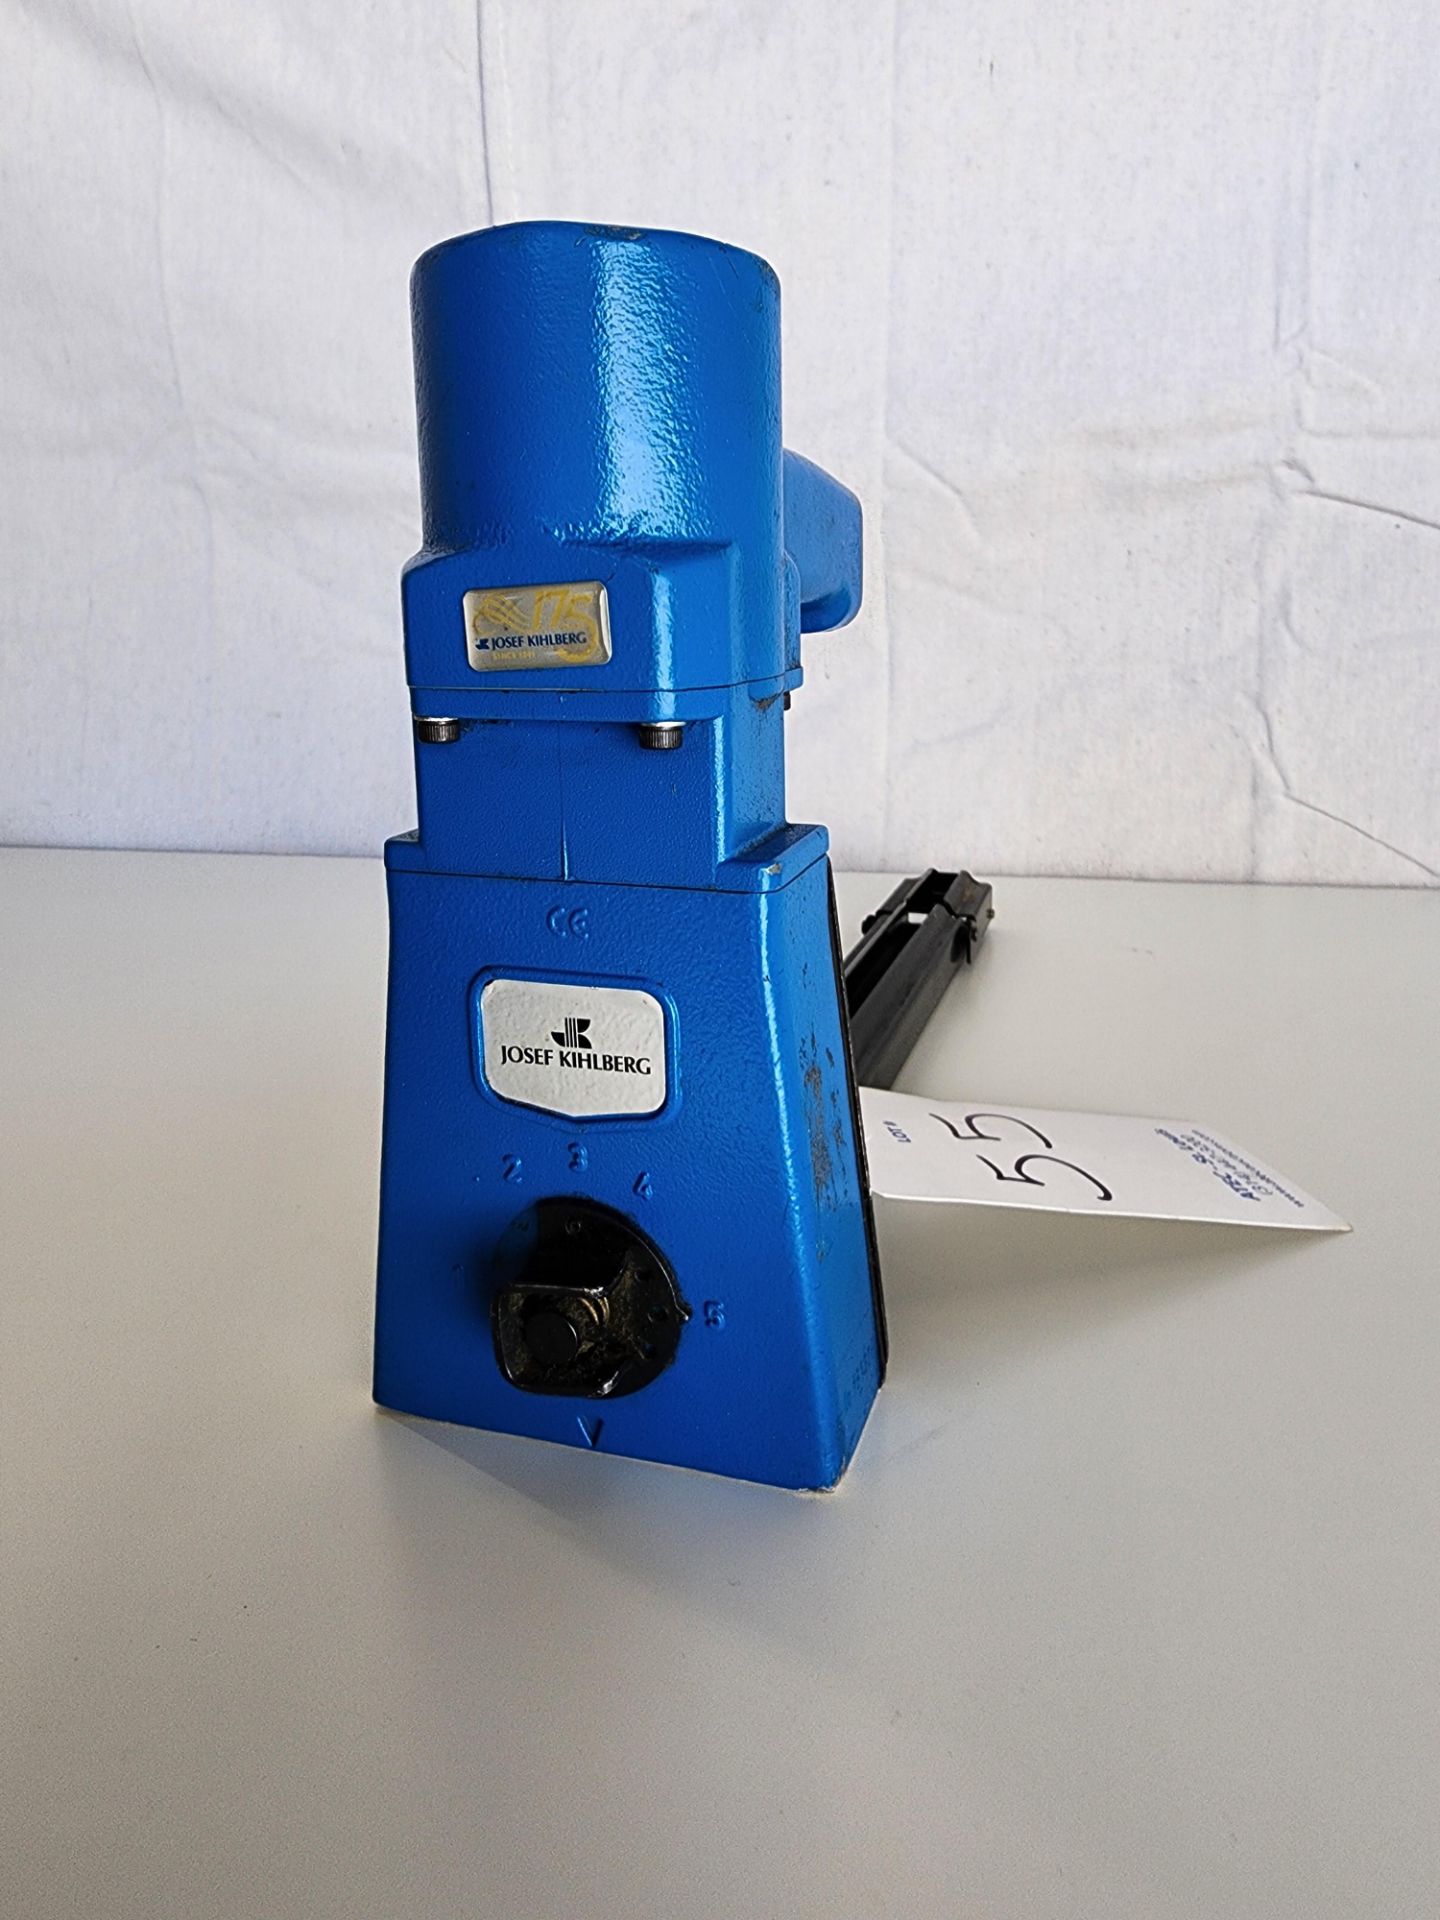 Josef Kihlberg Model 561-15PN Pneumatic Top Stapler w/User Manual